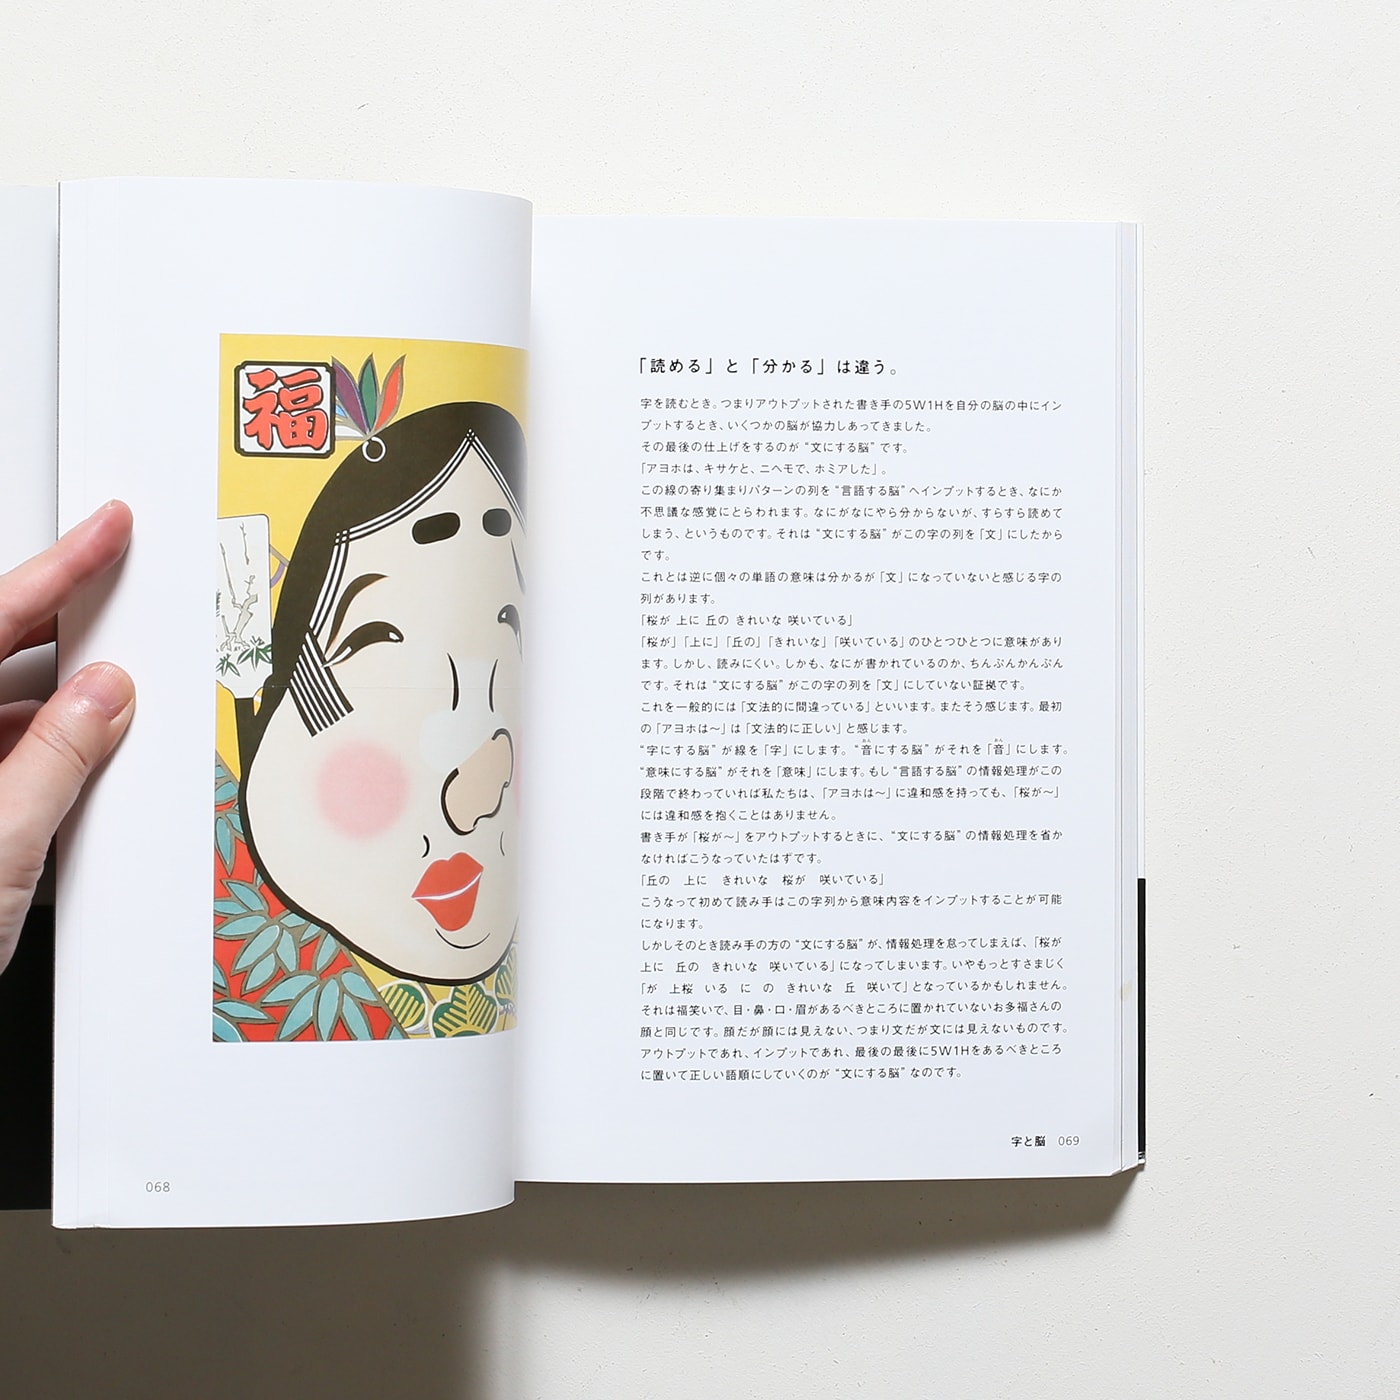 字本 Jiborn : A Book of Letters and Characters